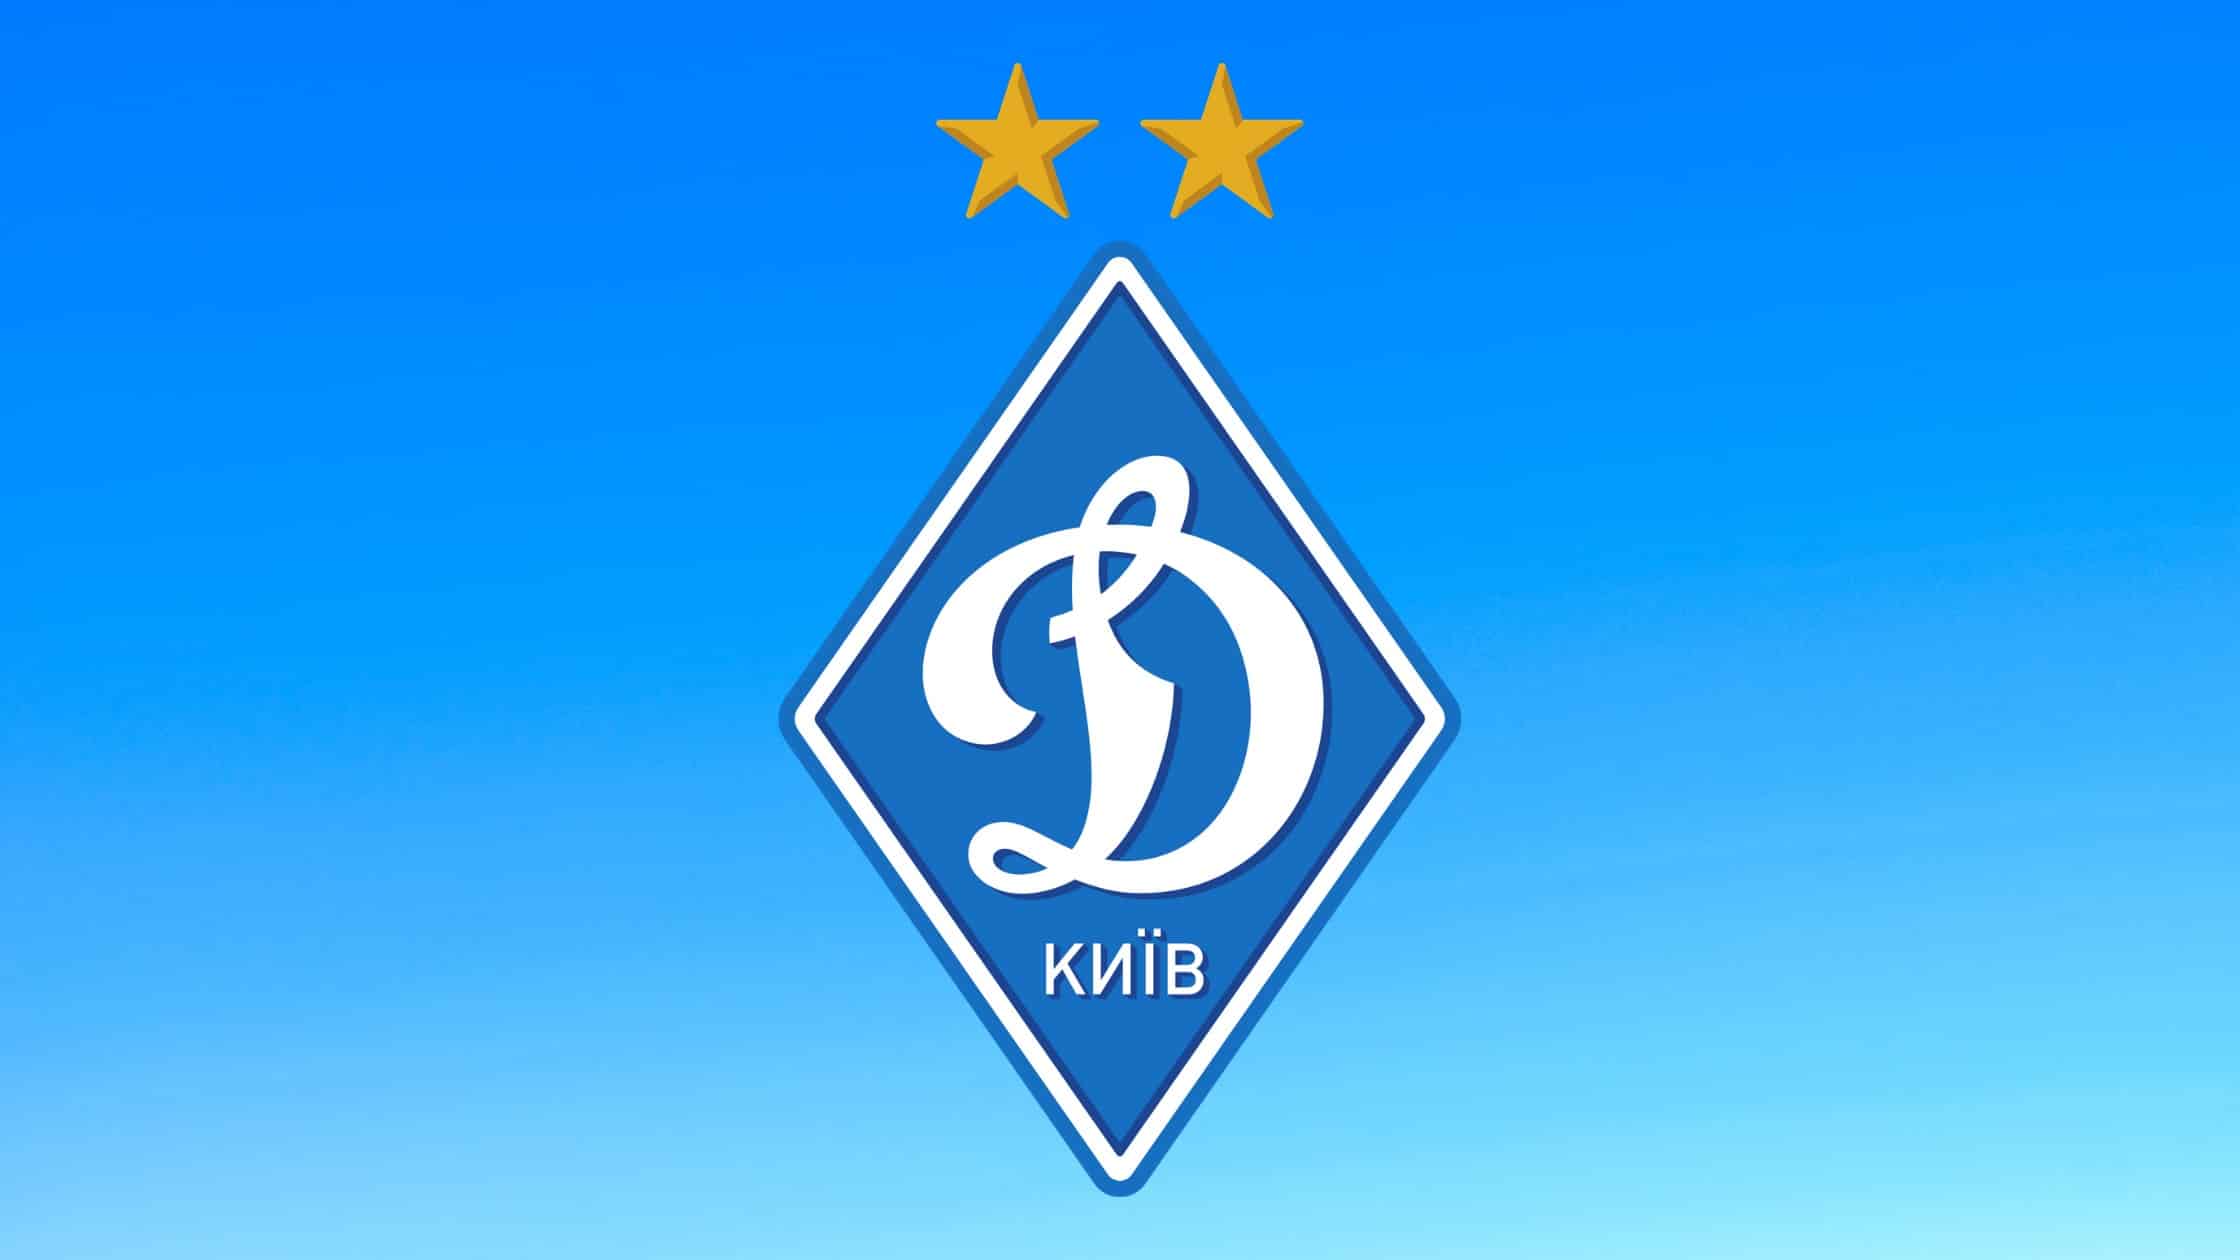 Dynamo Kiew ist ein Traditionsverein aus der Ukraine, der regelmäßig an der UEFA Champions League oder der Europa League teilnimmt.